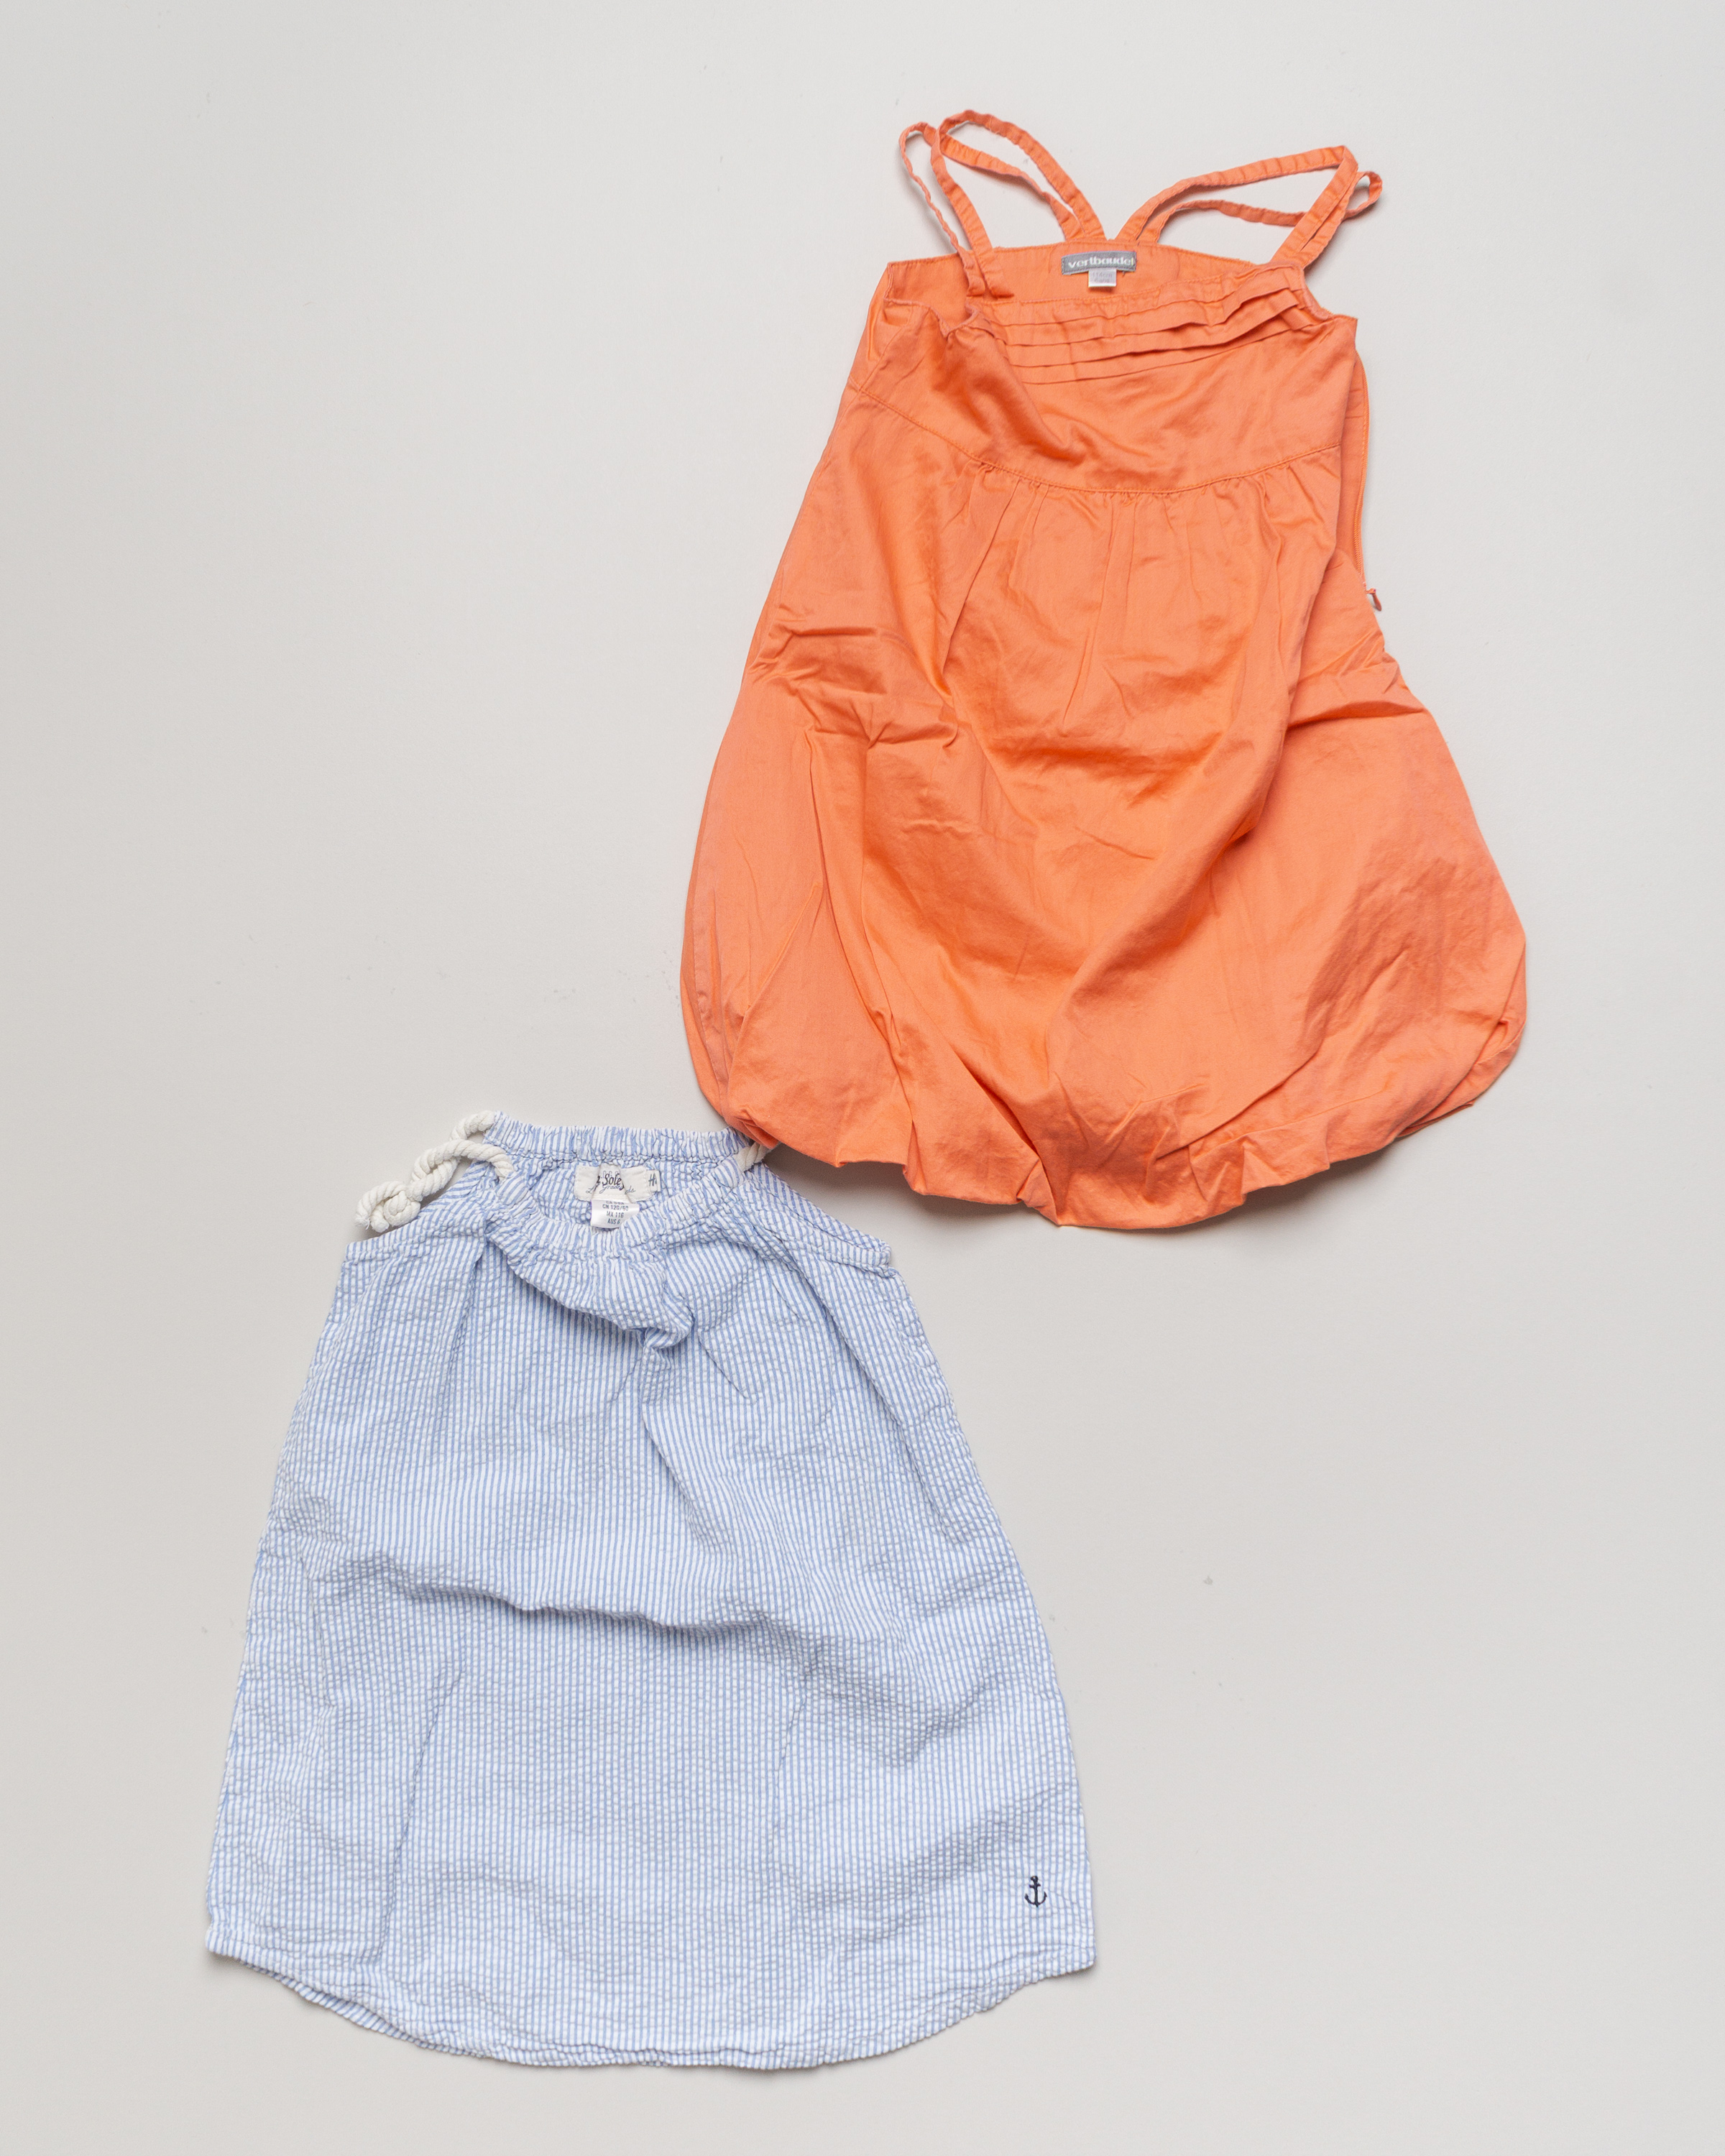 2x Kleid Gr. 116 – 1x Vertbaudet 1x H&M Streifen Blau Weiß Orange